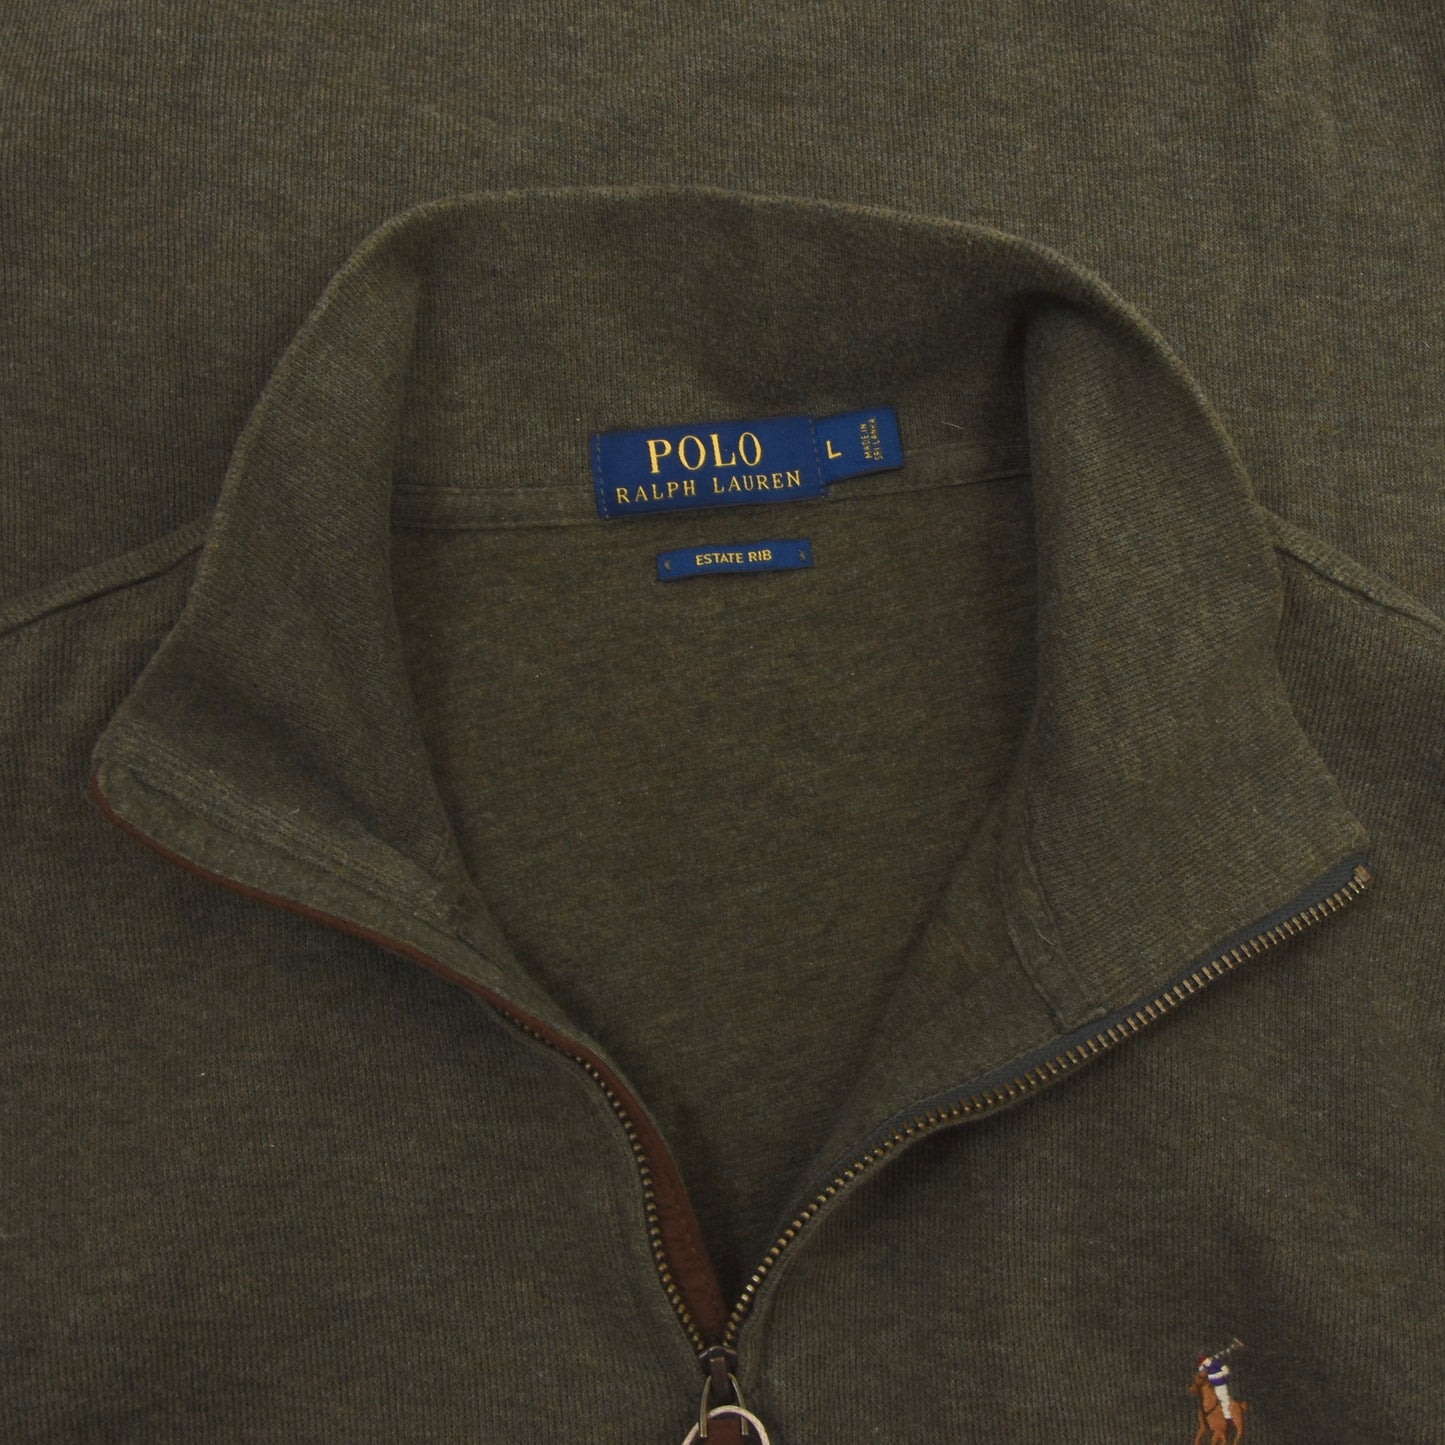 Polo Ralph Lauren Estate Rib Pullover mit 1/4 Reißverschluss - Grün